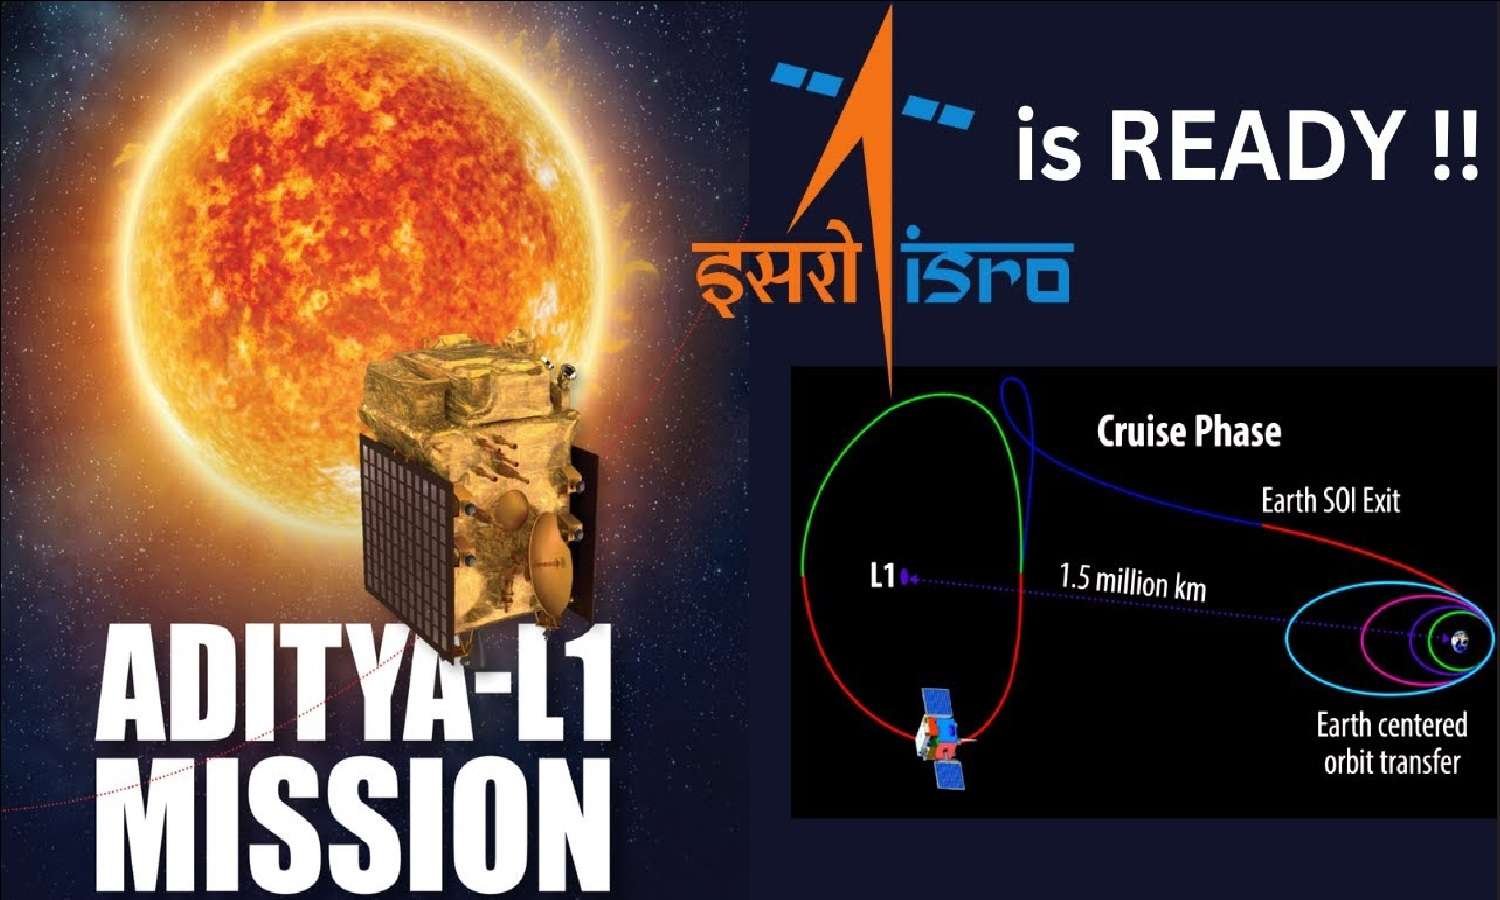 ISRO चंद्रमा के बाद सूर्य की स्टडी करेगा! सितंबर में लॉन्च होगा Aditya L1 Mission